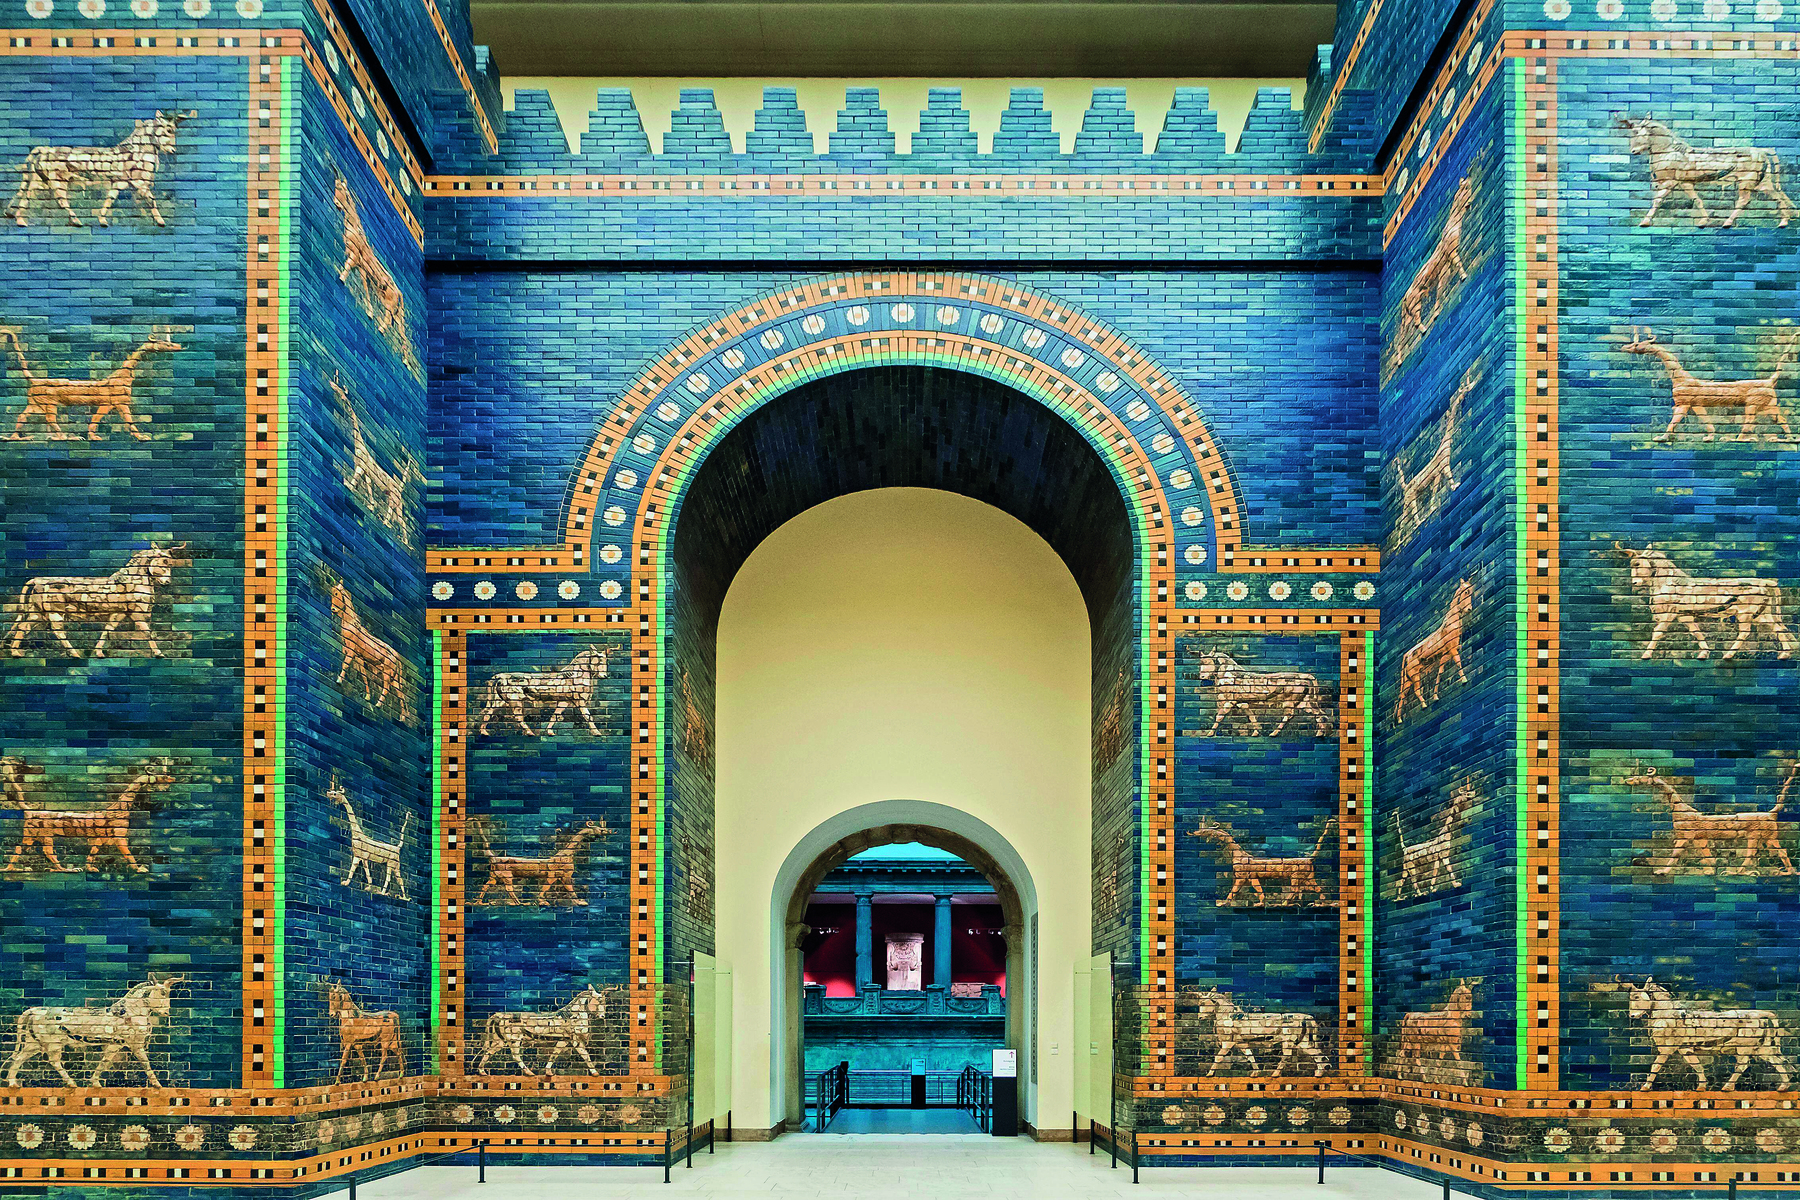 Fotografia. Vista da entrada de uma construção, com paredes azuis e imagens de animais dourados. No centro, uma grande abertura com formato arqueado no topo.